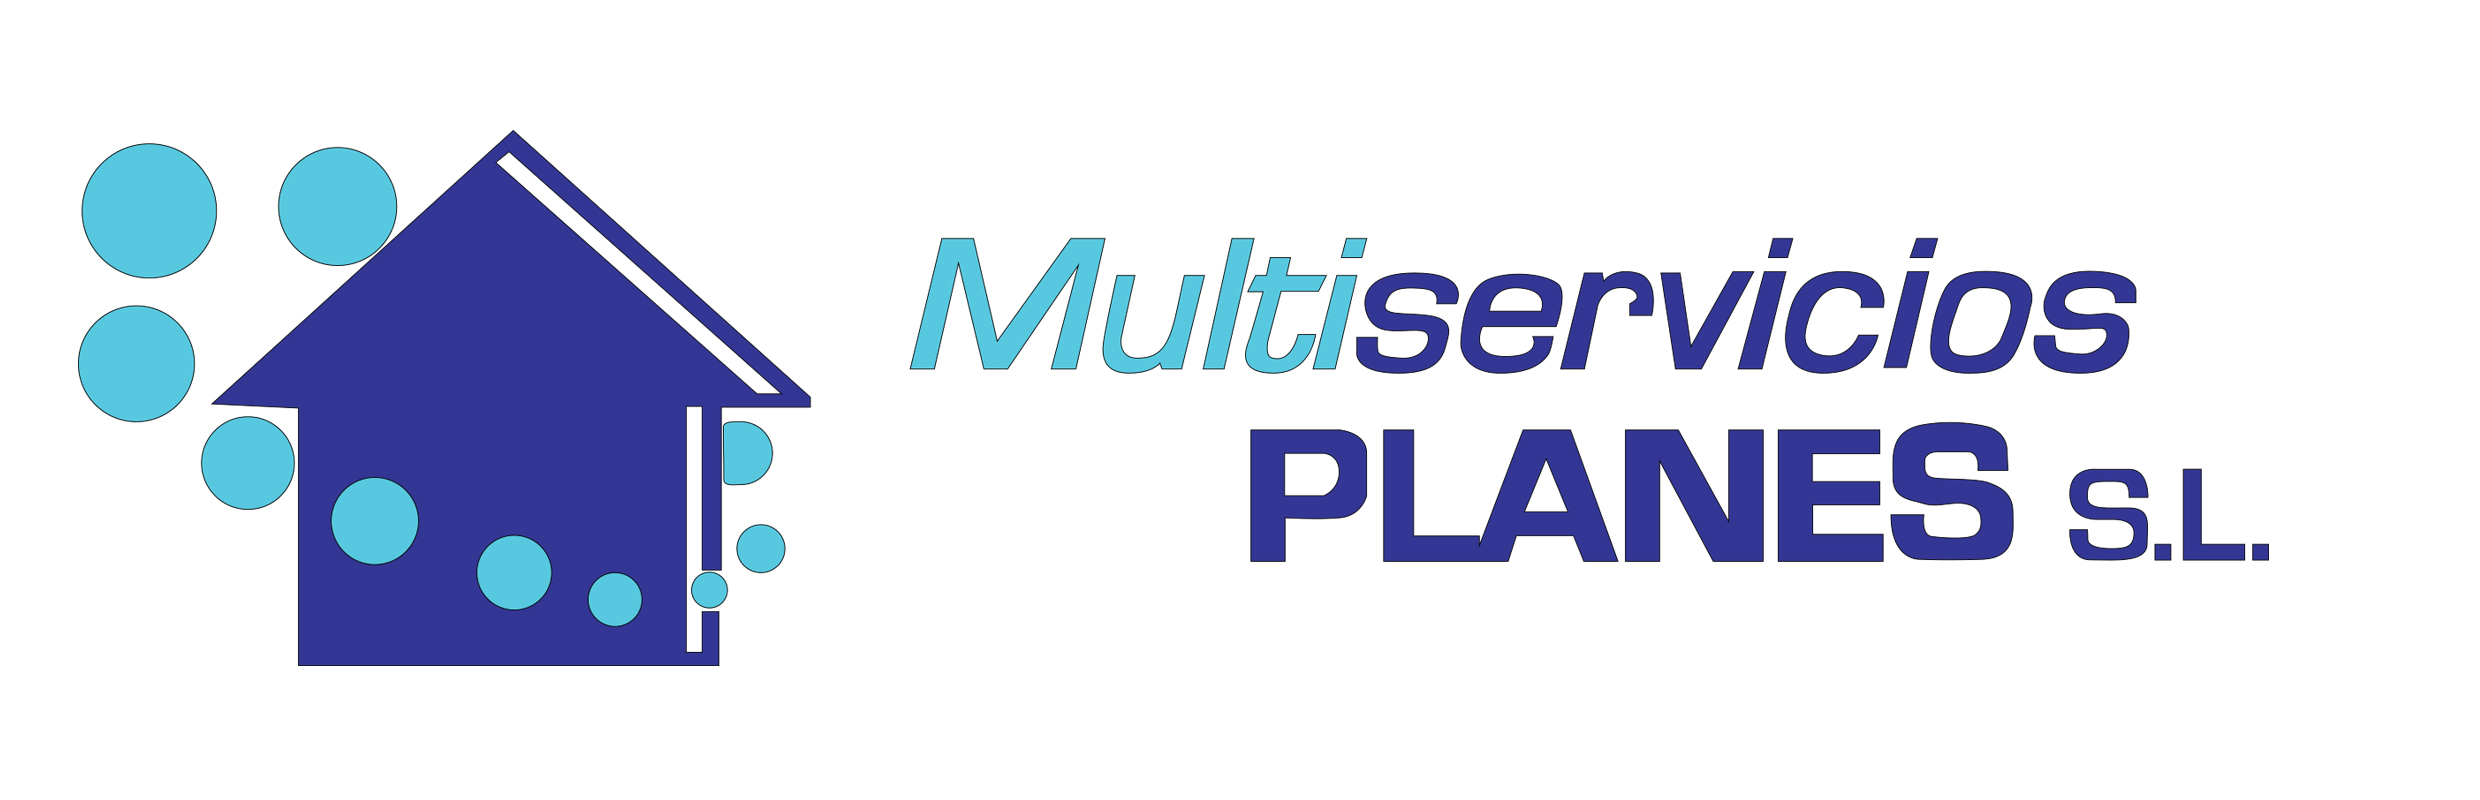 Multiservicios Planes SL Socio de AESA Asociación de Empresas de Servicios a Aseguradoras y Afines